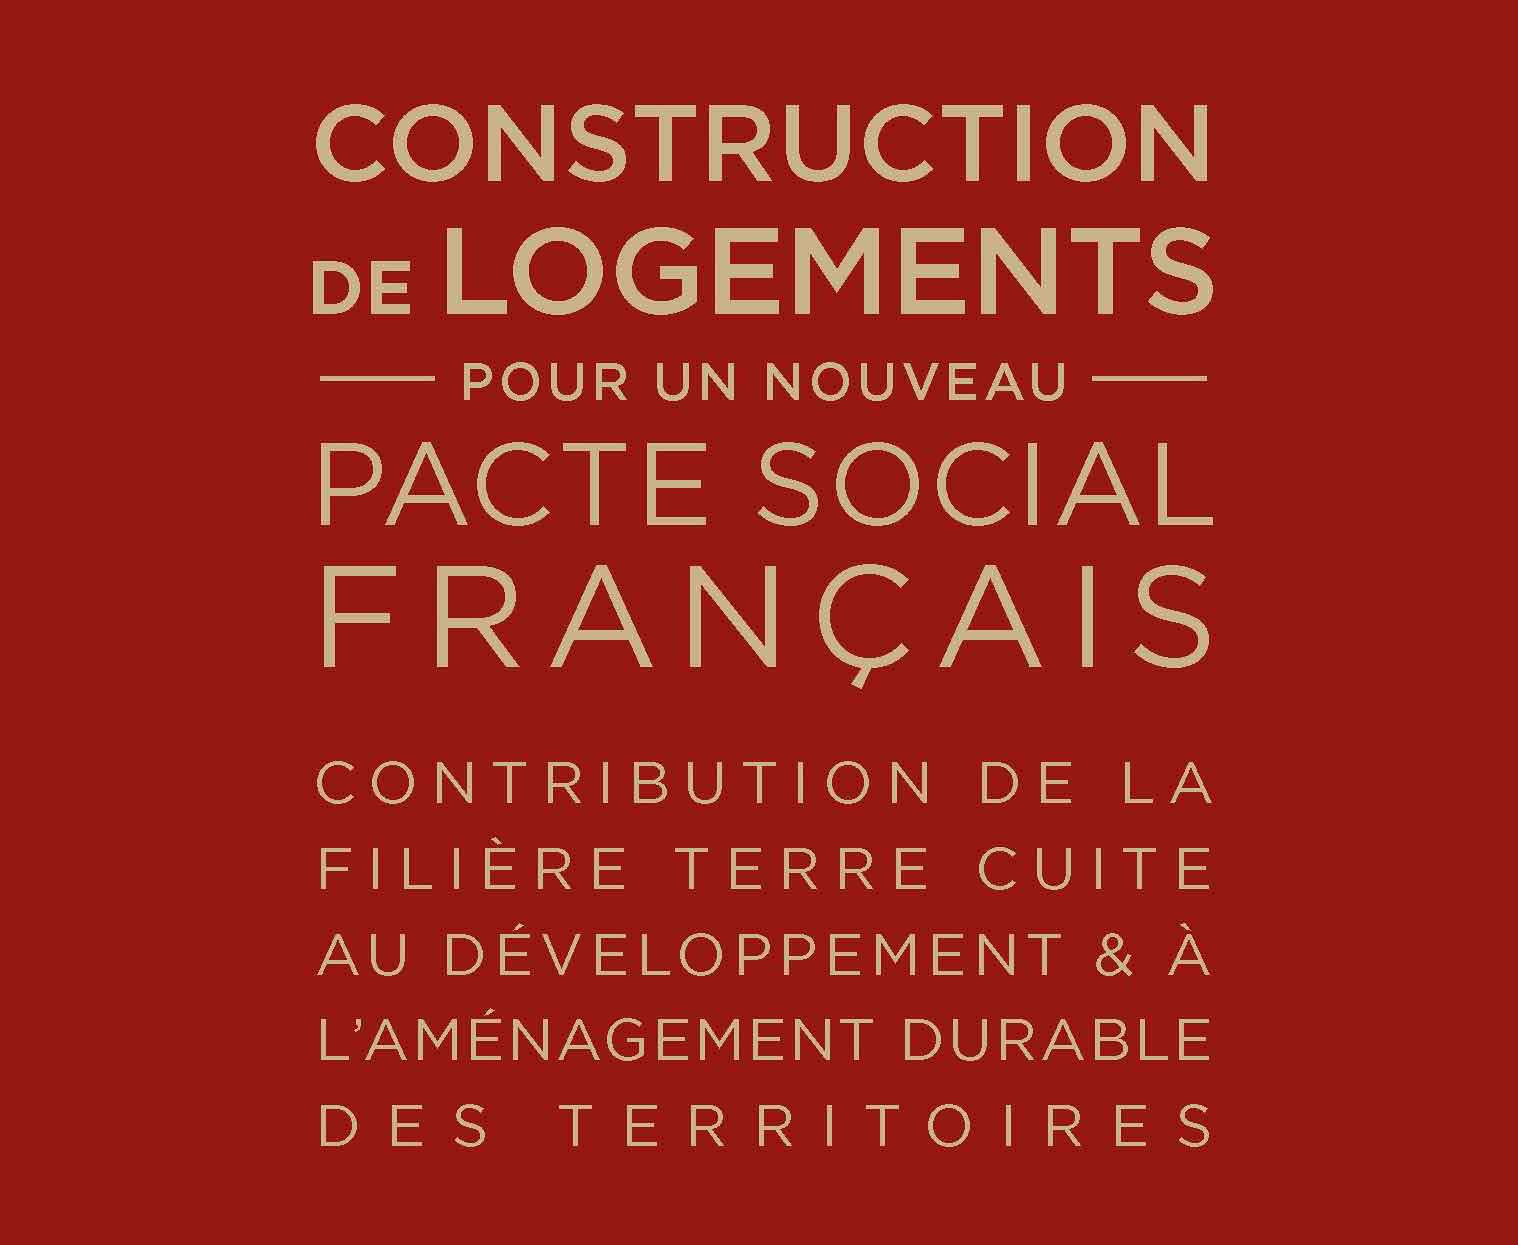 Construction de Logement : Pour un nouveau Pacte social Français  - Contribution de la Filière terre cuite au développement et à l’aménagement des territoires ».